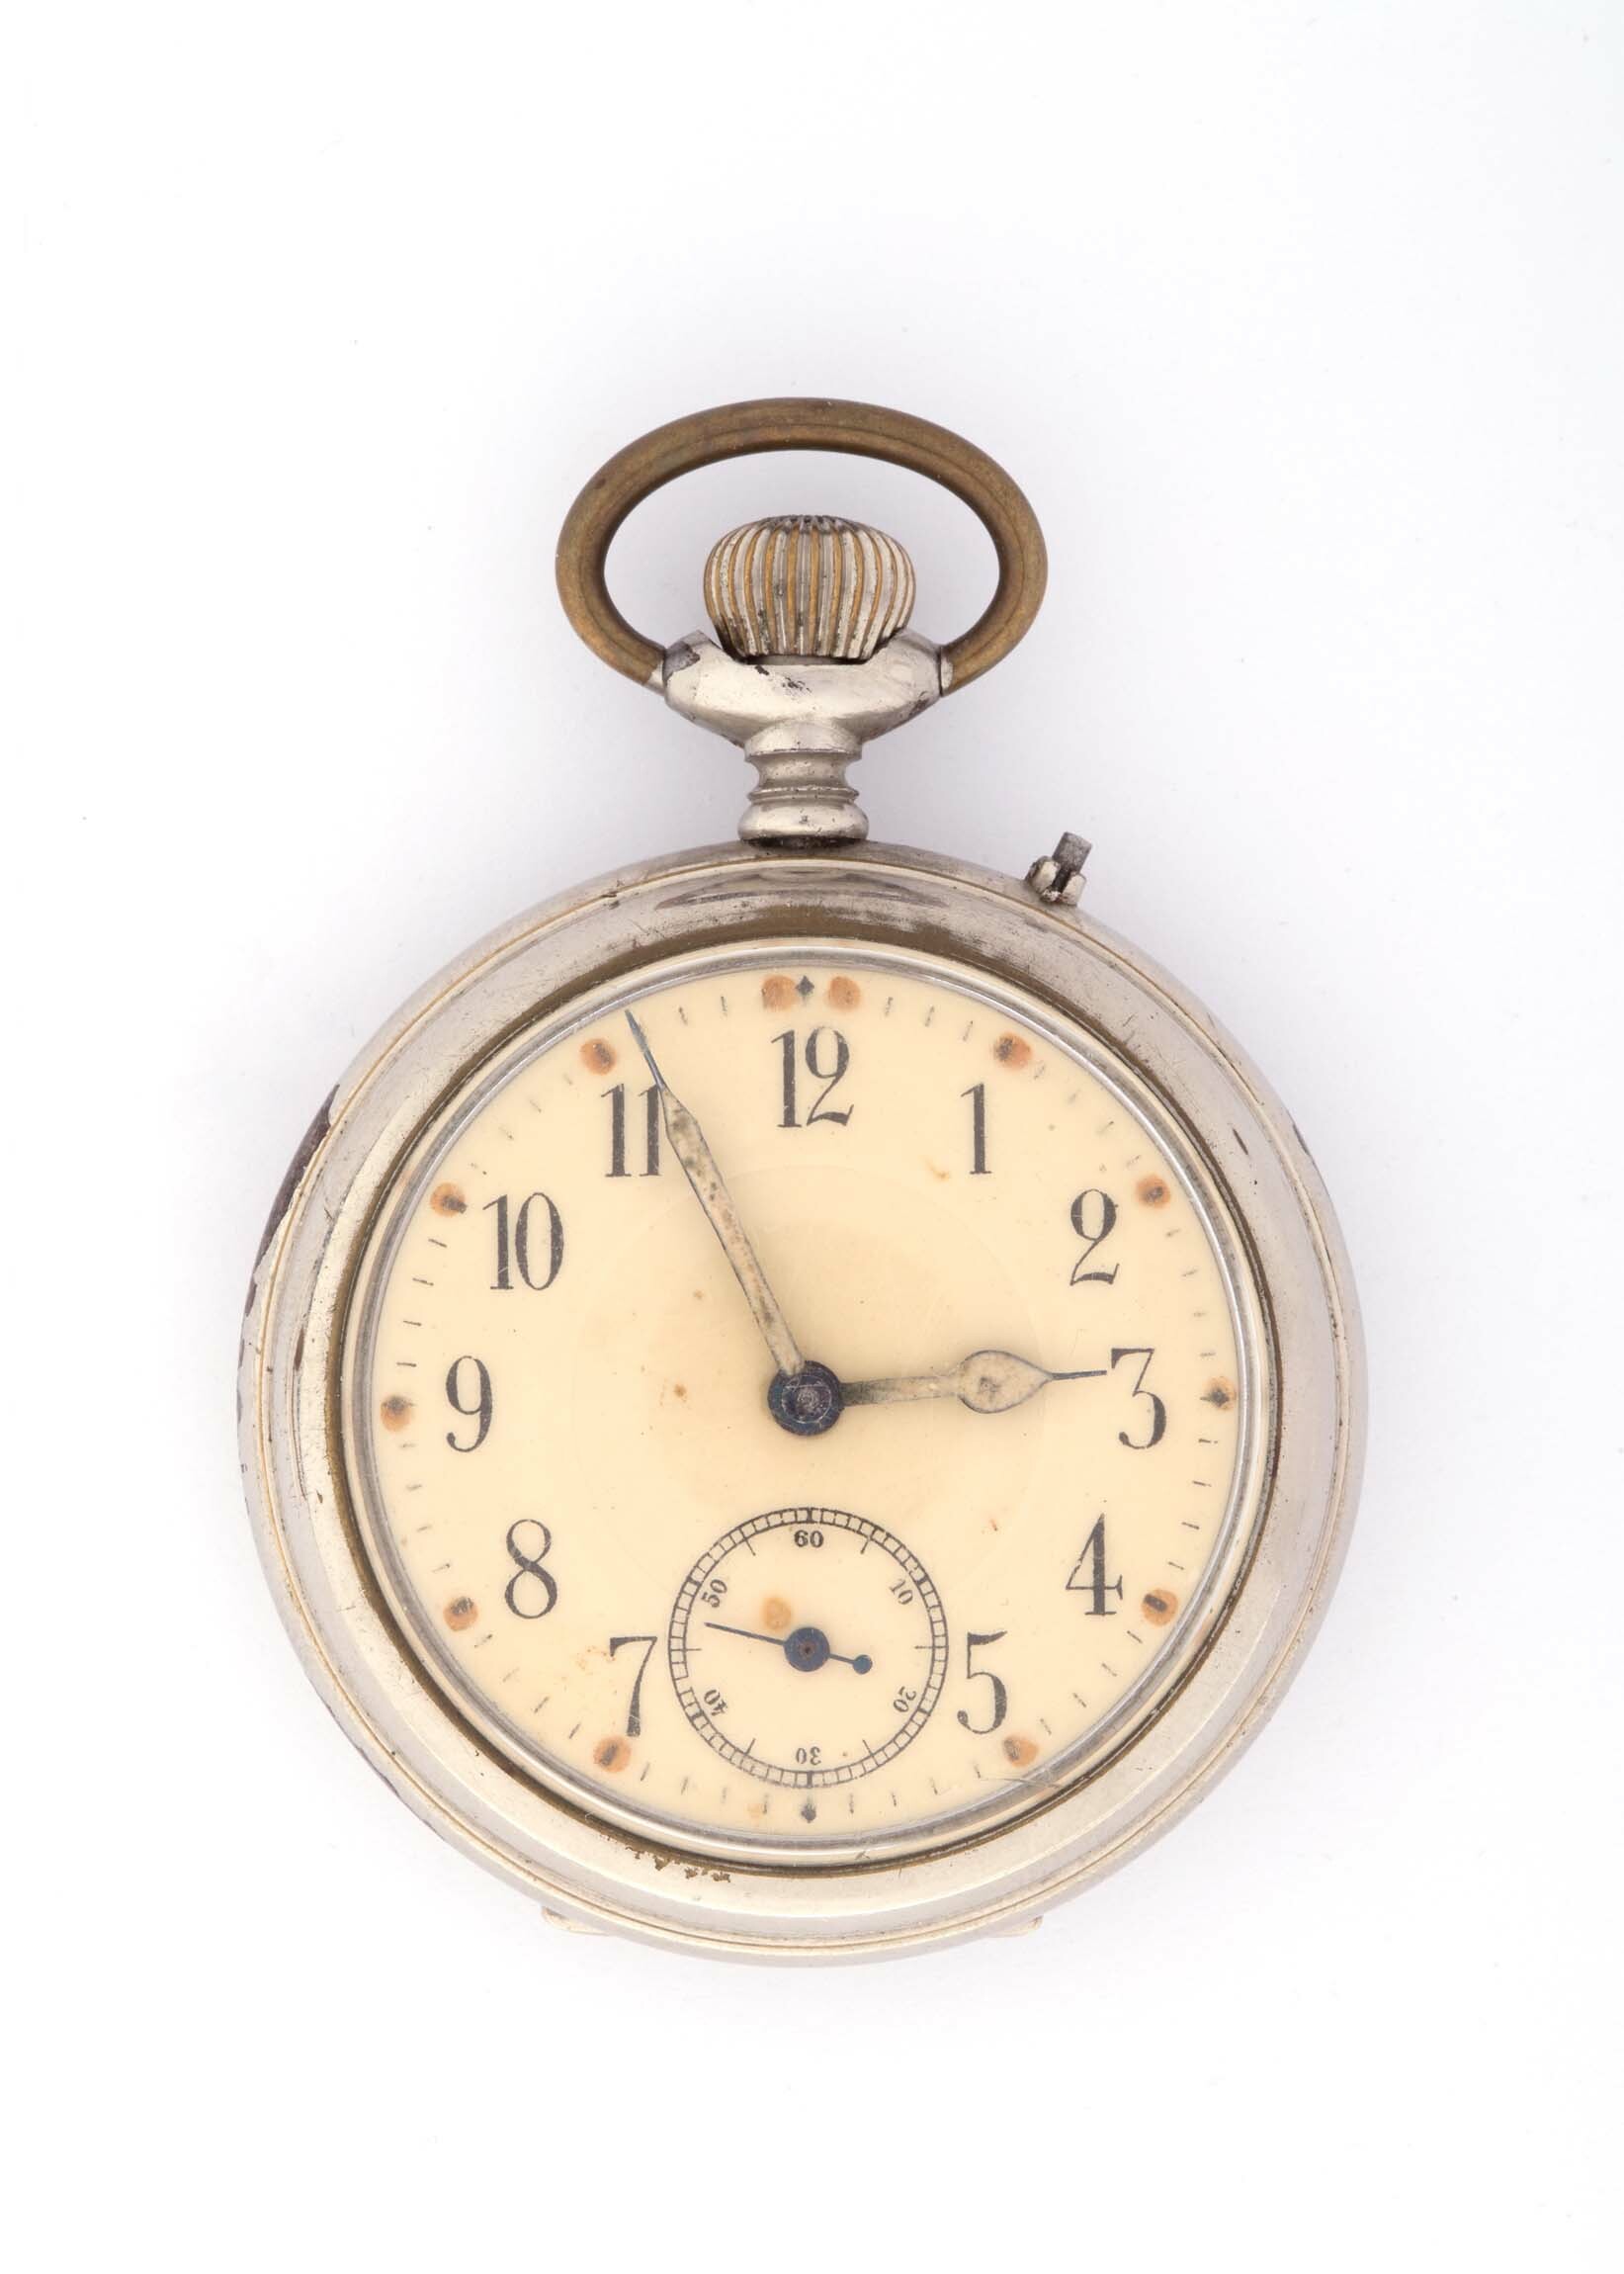 Taschenuhr, Thomas Ernst Haller, Schwenningen, um 1914 (Deutsches Uhrenmuseum CC BY-SA)